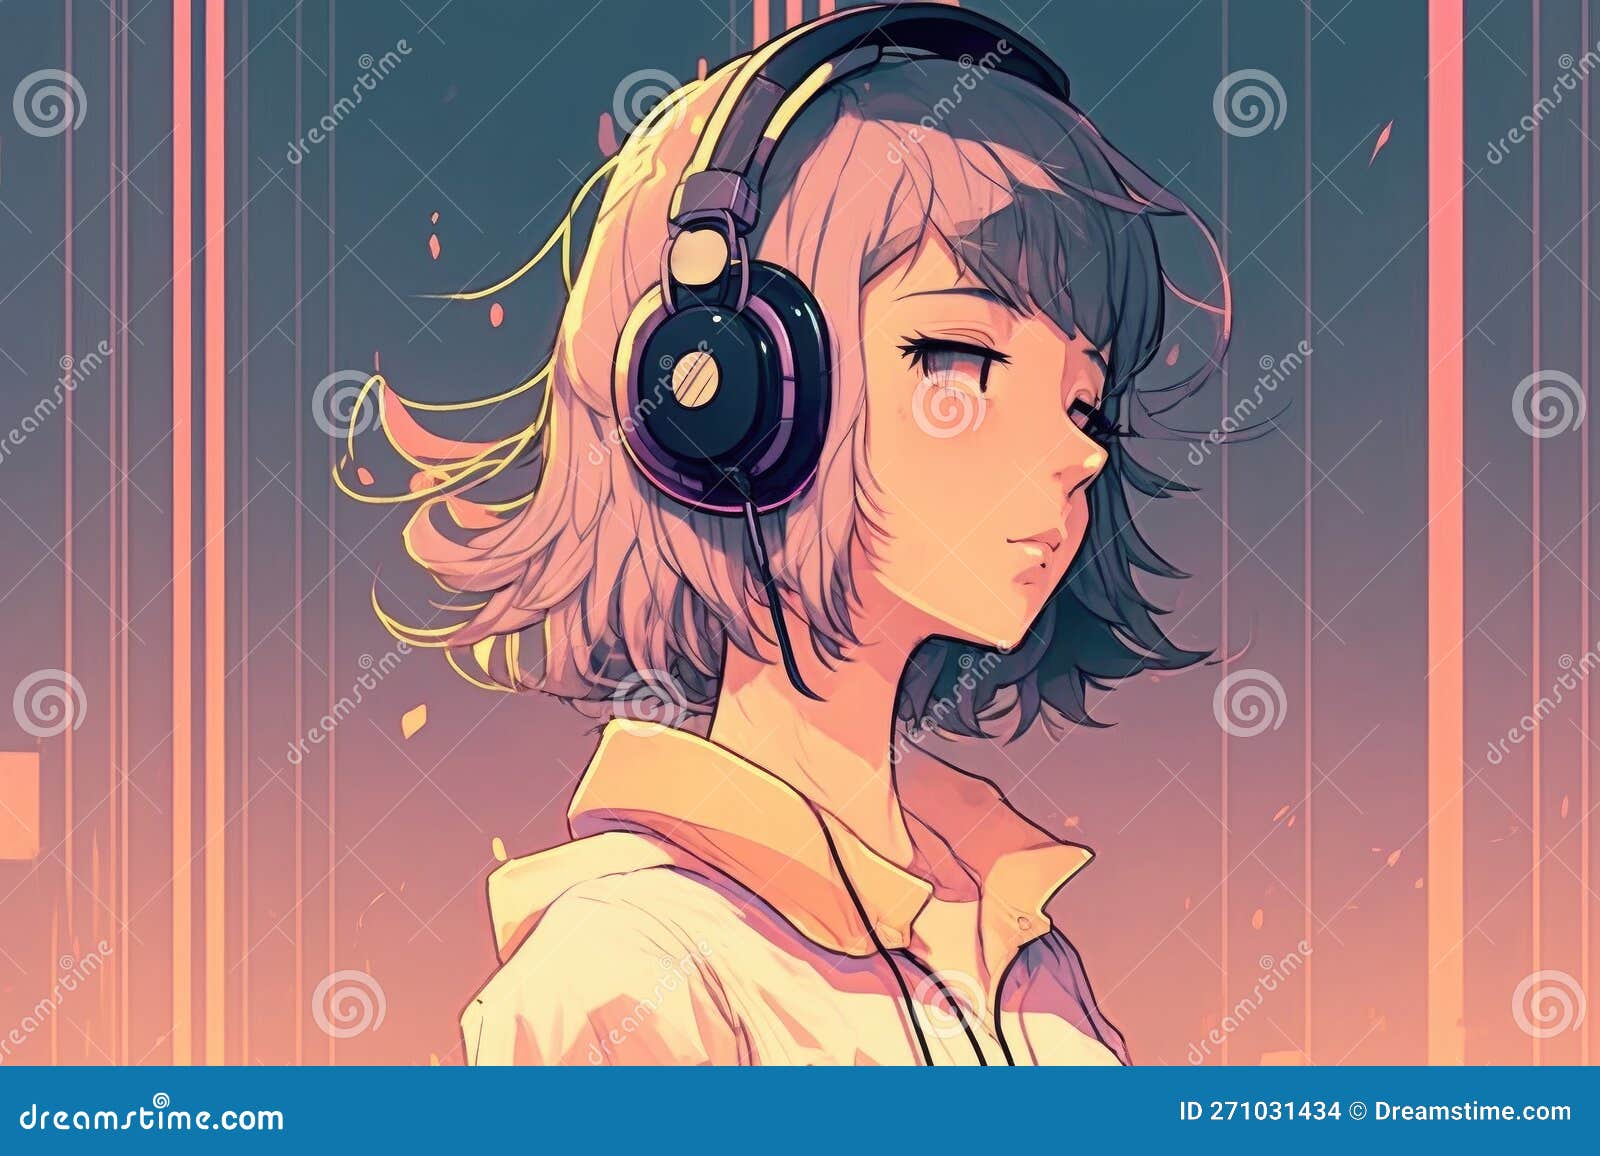 Love Anime anime music lover HD wallpaper  Pxfuel